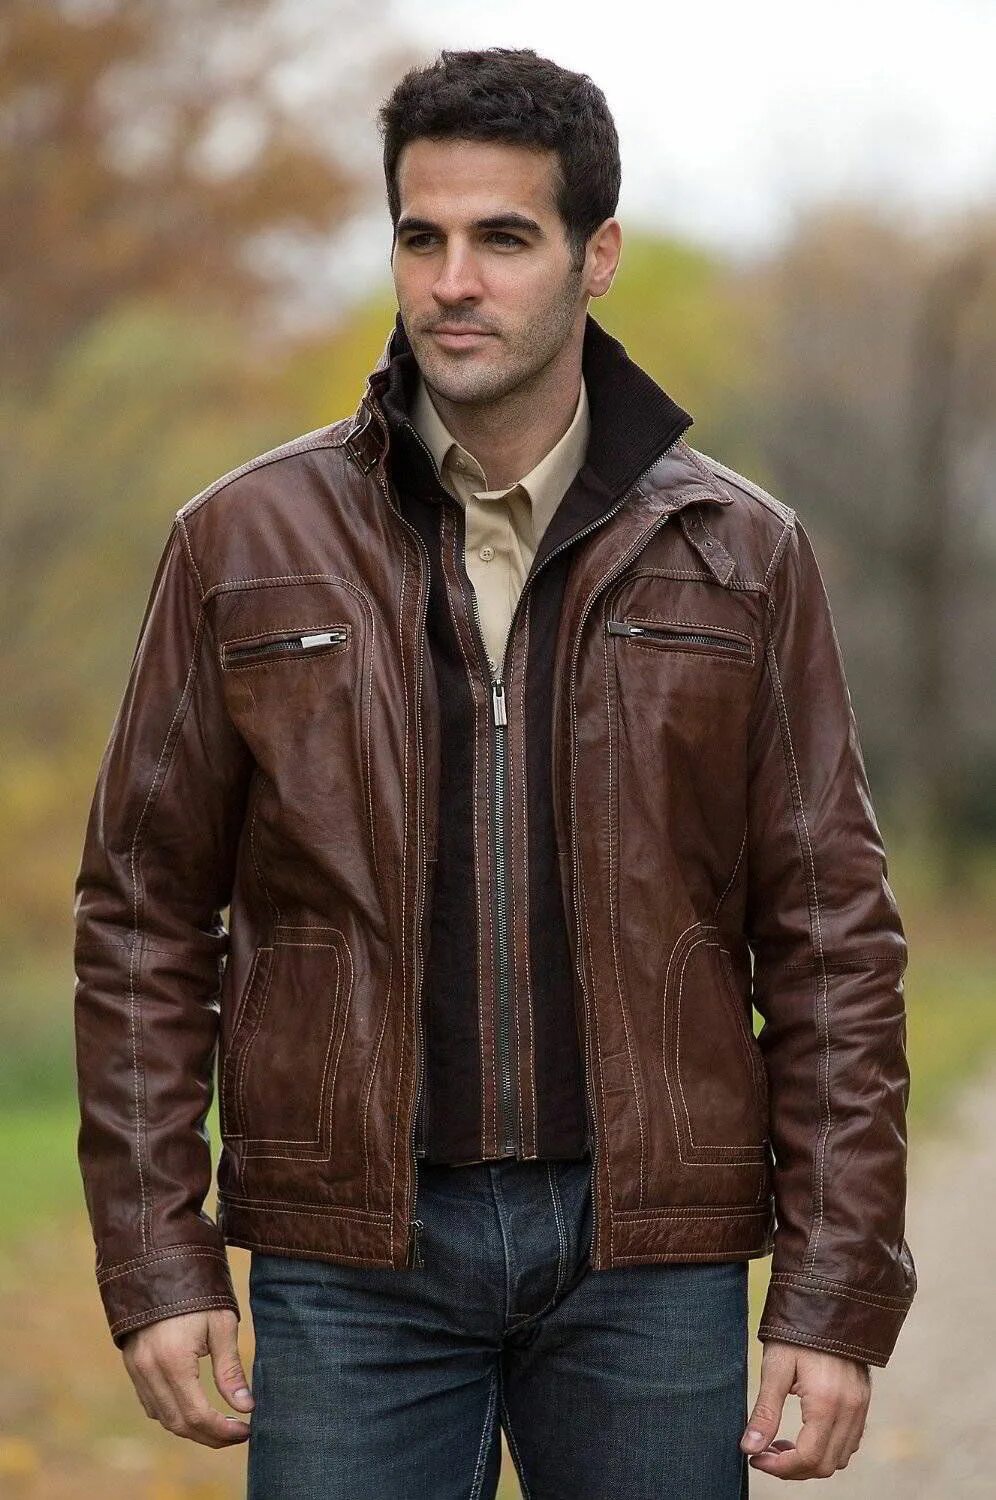 Фото мужчины в куртке. Кожаная куртка Castro men. Мужчина в куртке. Мужчина в кожаной куртке. Коричневая куртка мужская.